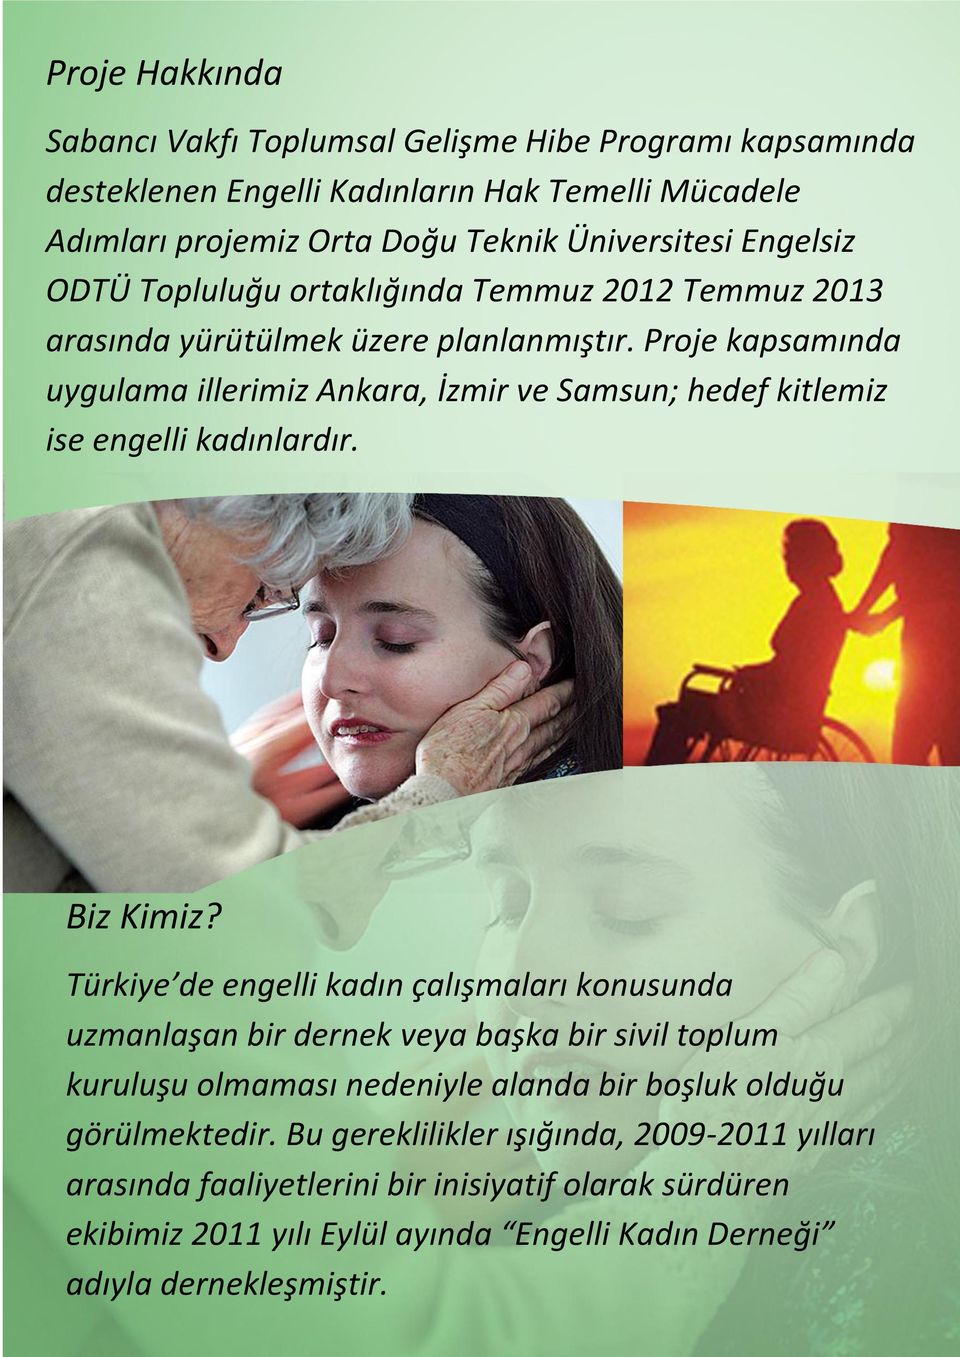 Proje kapsamında uygulama illerimiz Ankara, İzmir ve Samsun; hedef kitlemiz ise engelli kadınlardır. Biz Kimiz?